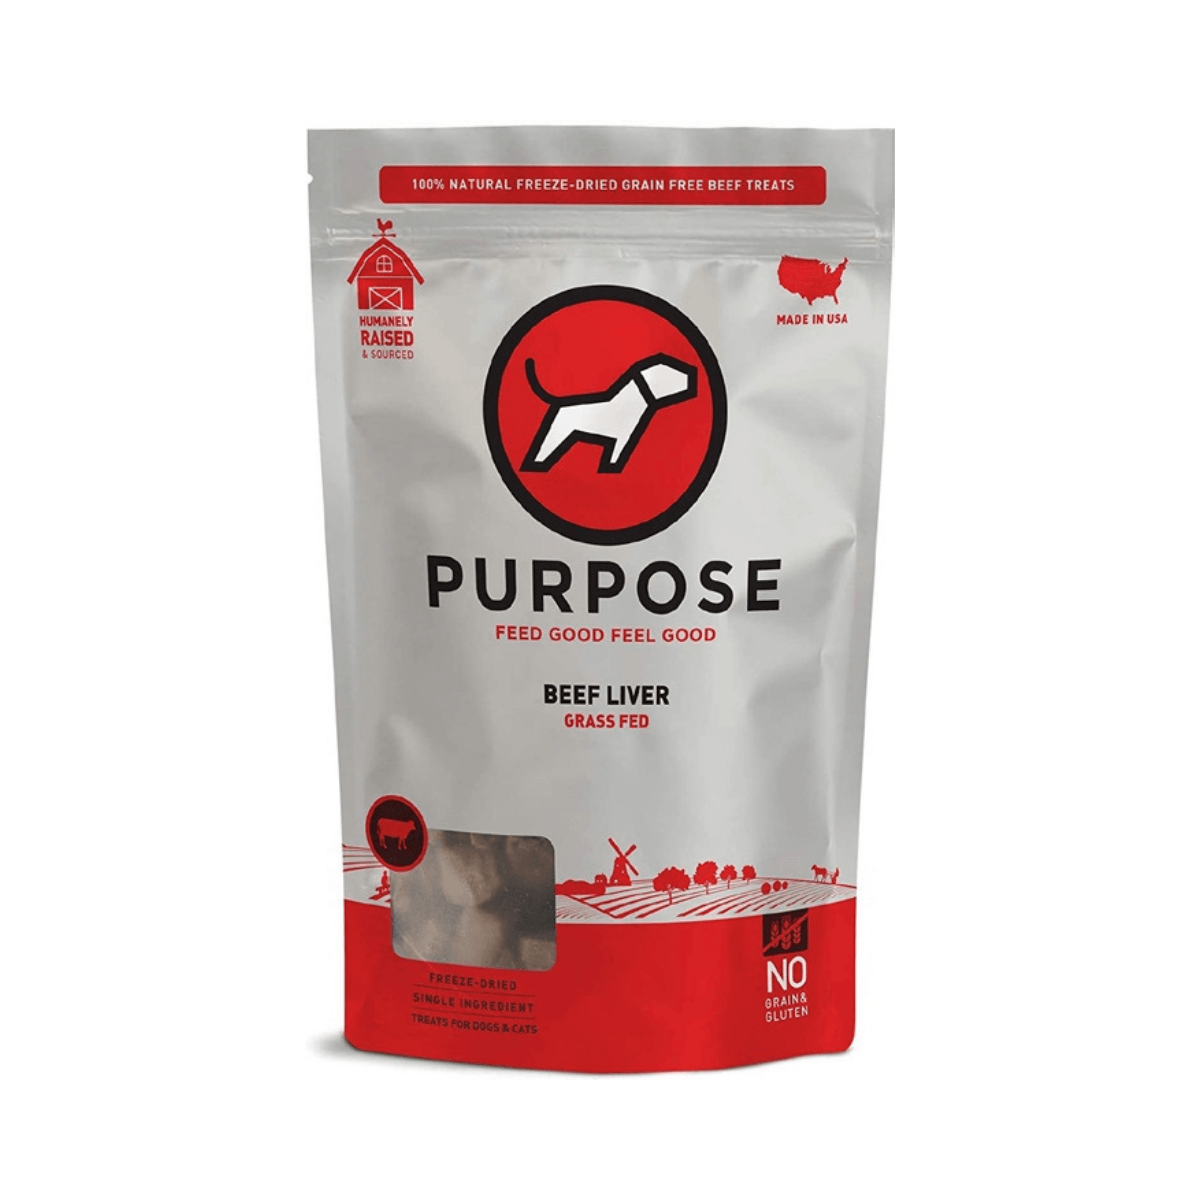 【Purpose】 生肉小食 單一蛋白 - 牛肝 3oz - Pet Pet Plaza